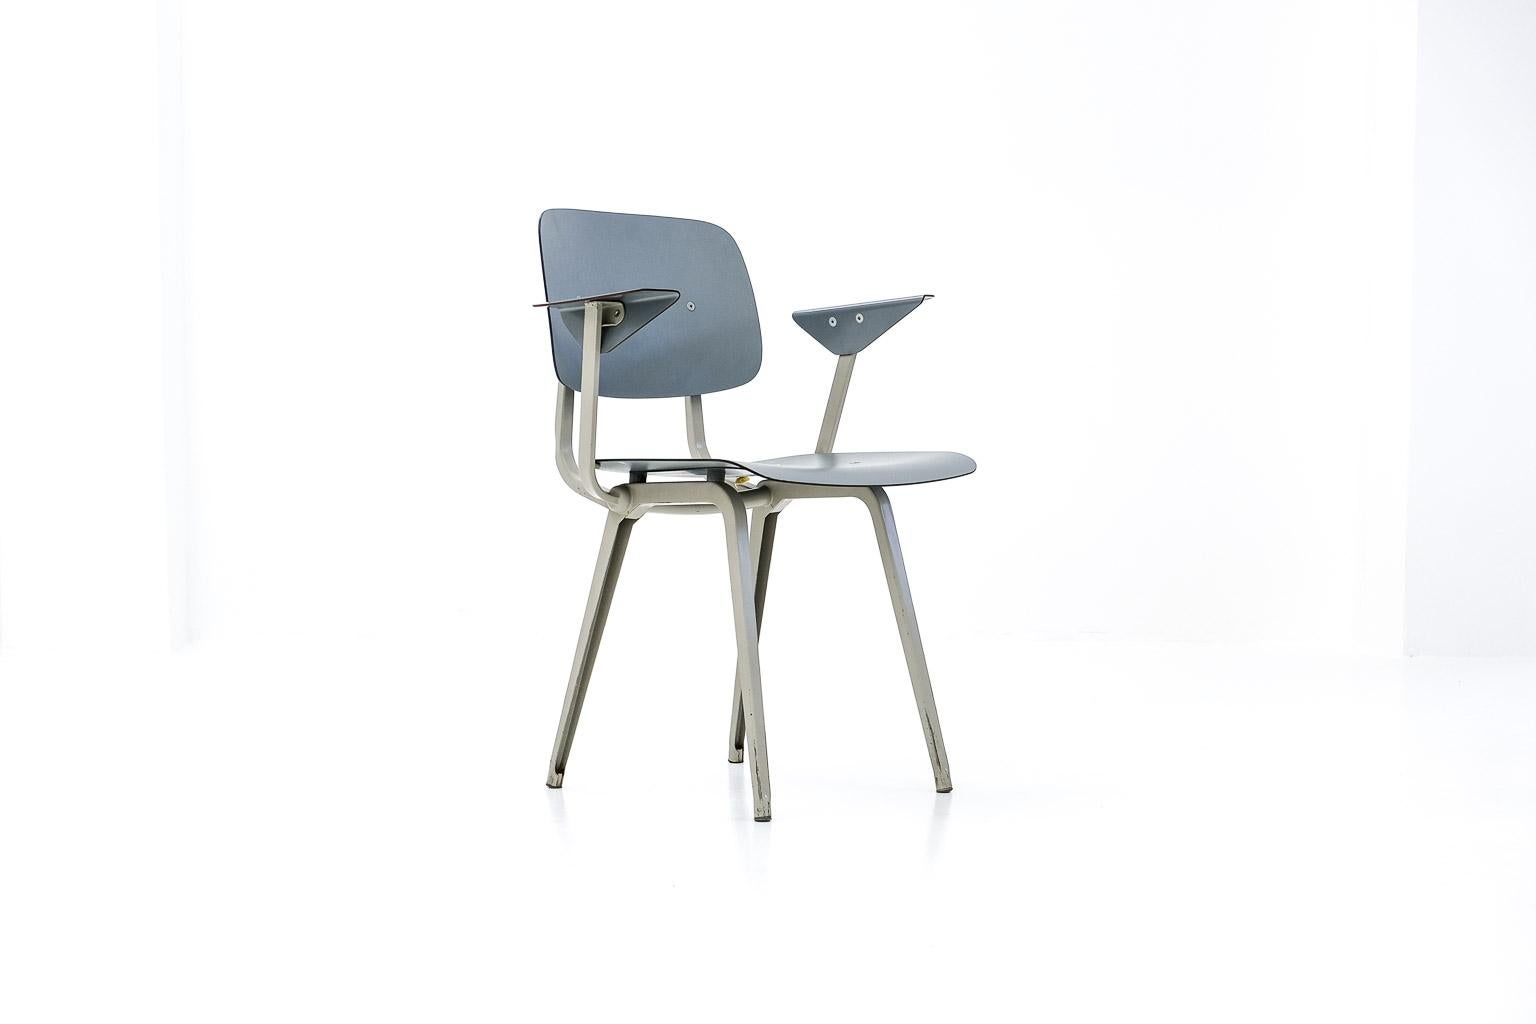 einer unserer lieblingsentwürfe ist der wohl berühmteste stuhl des niederländischen designers friso kramer: stuhl 4060, genannt revolt